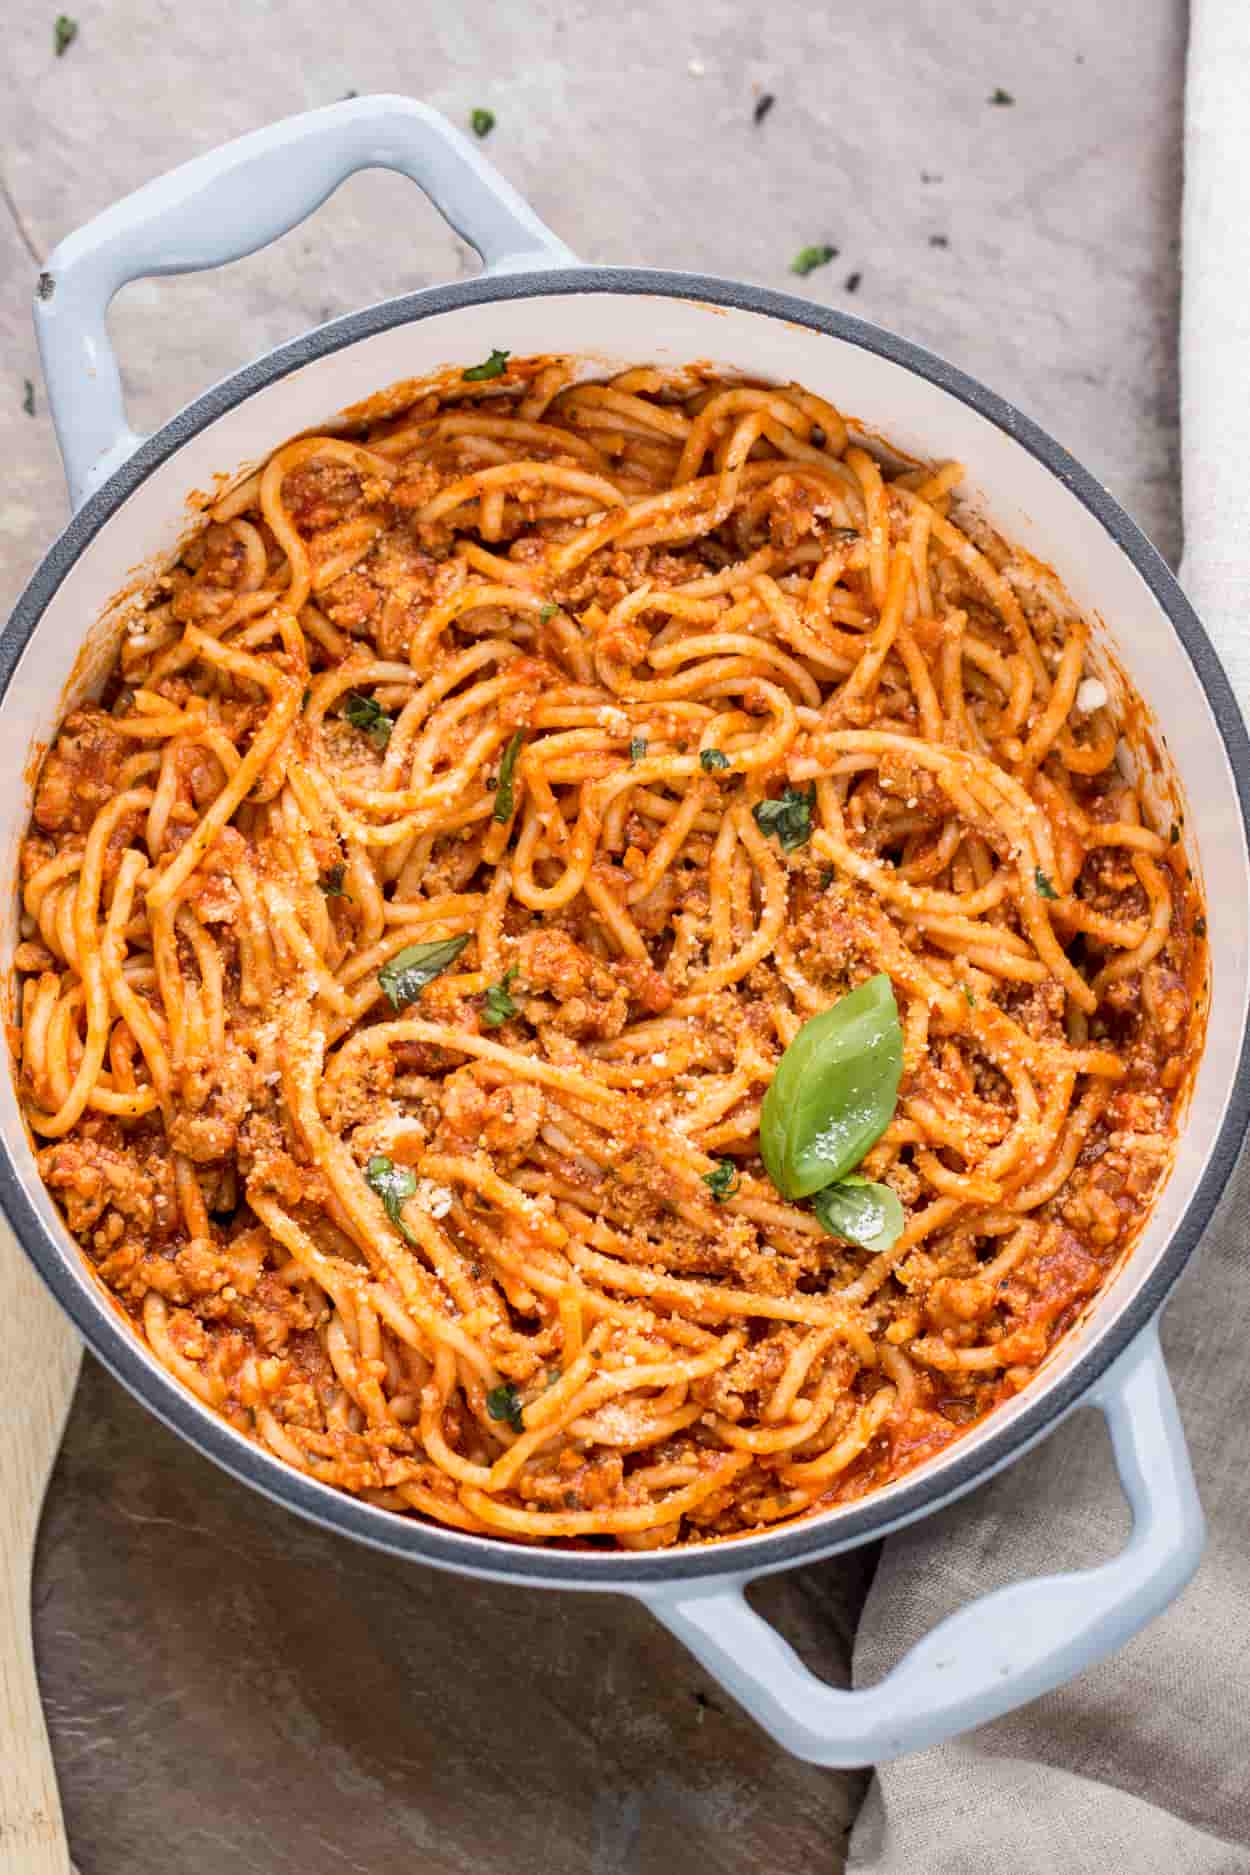 Spaghetti recipes